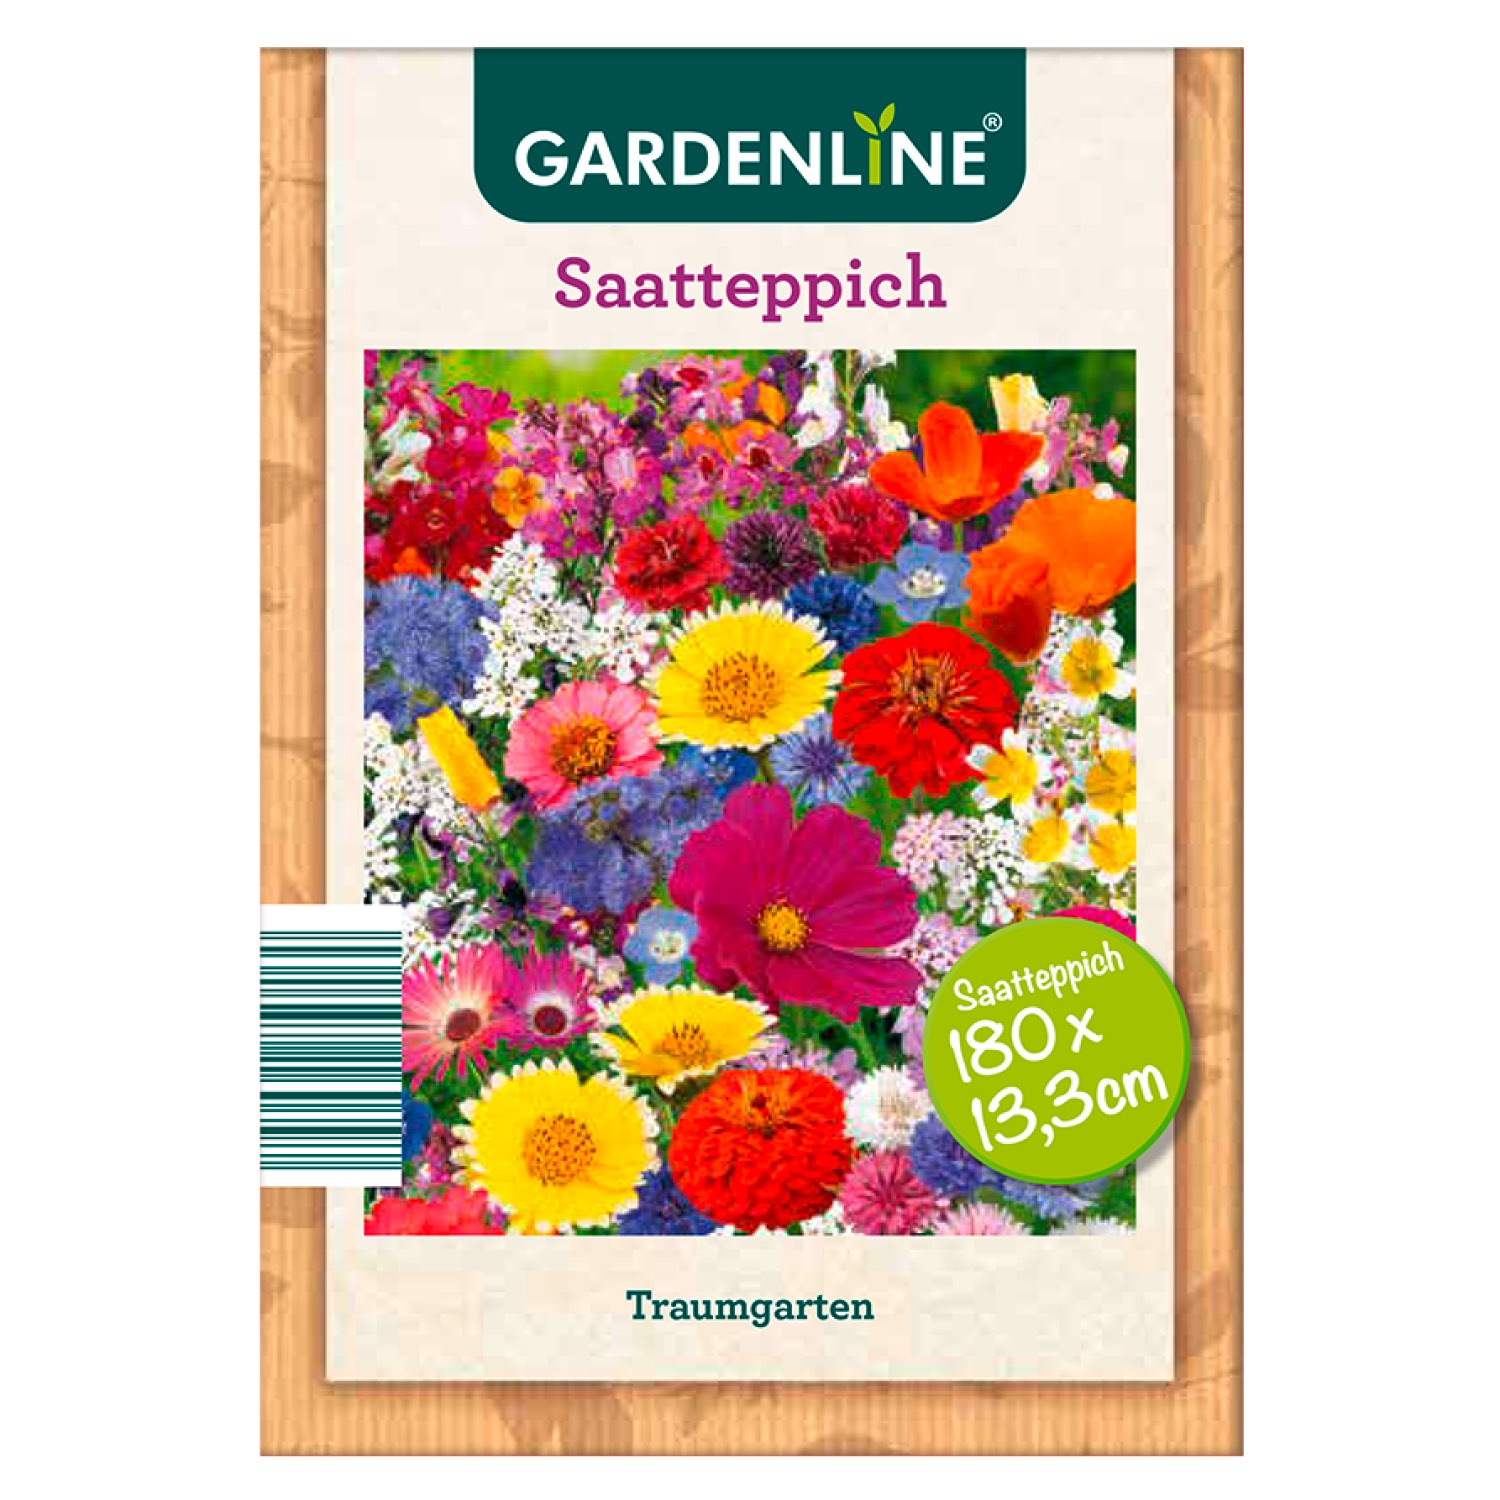 GARDENLINE® Sommerblumen-Saatteppich